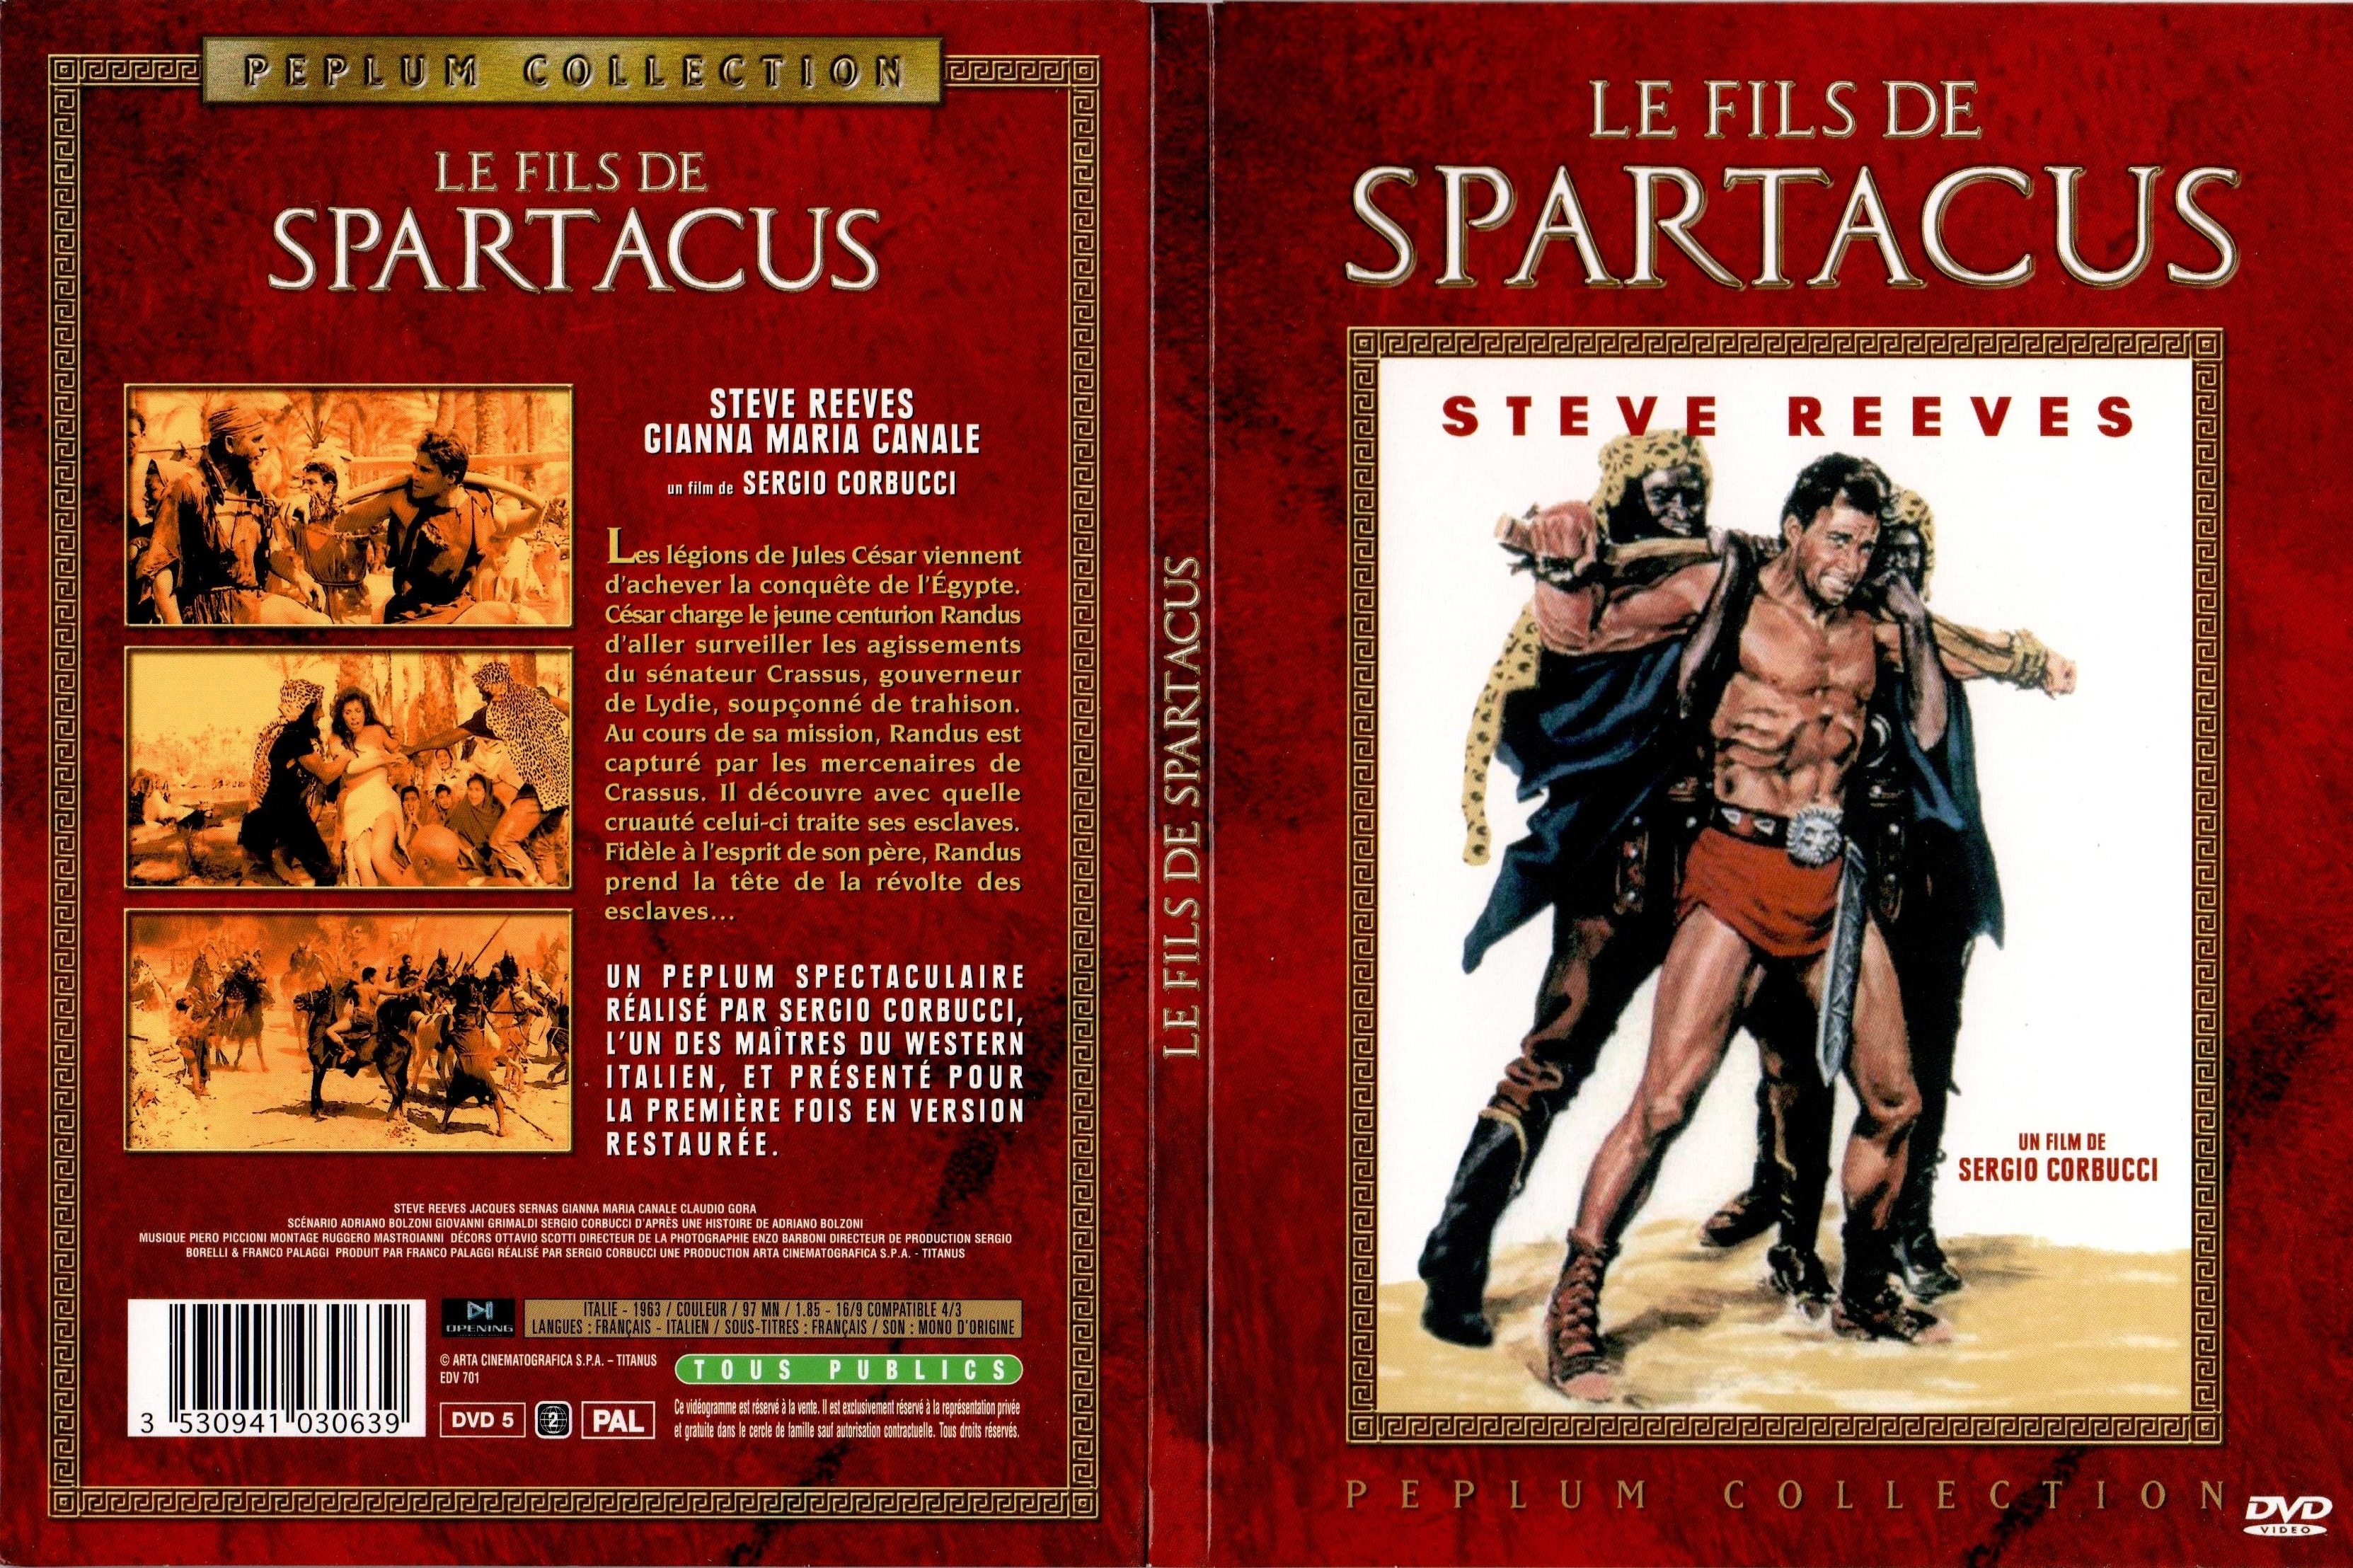 Jaquette DVD Le fils de spartacus